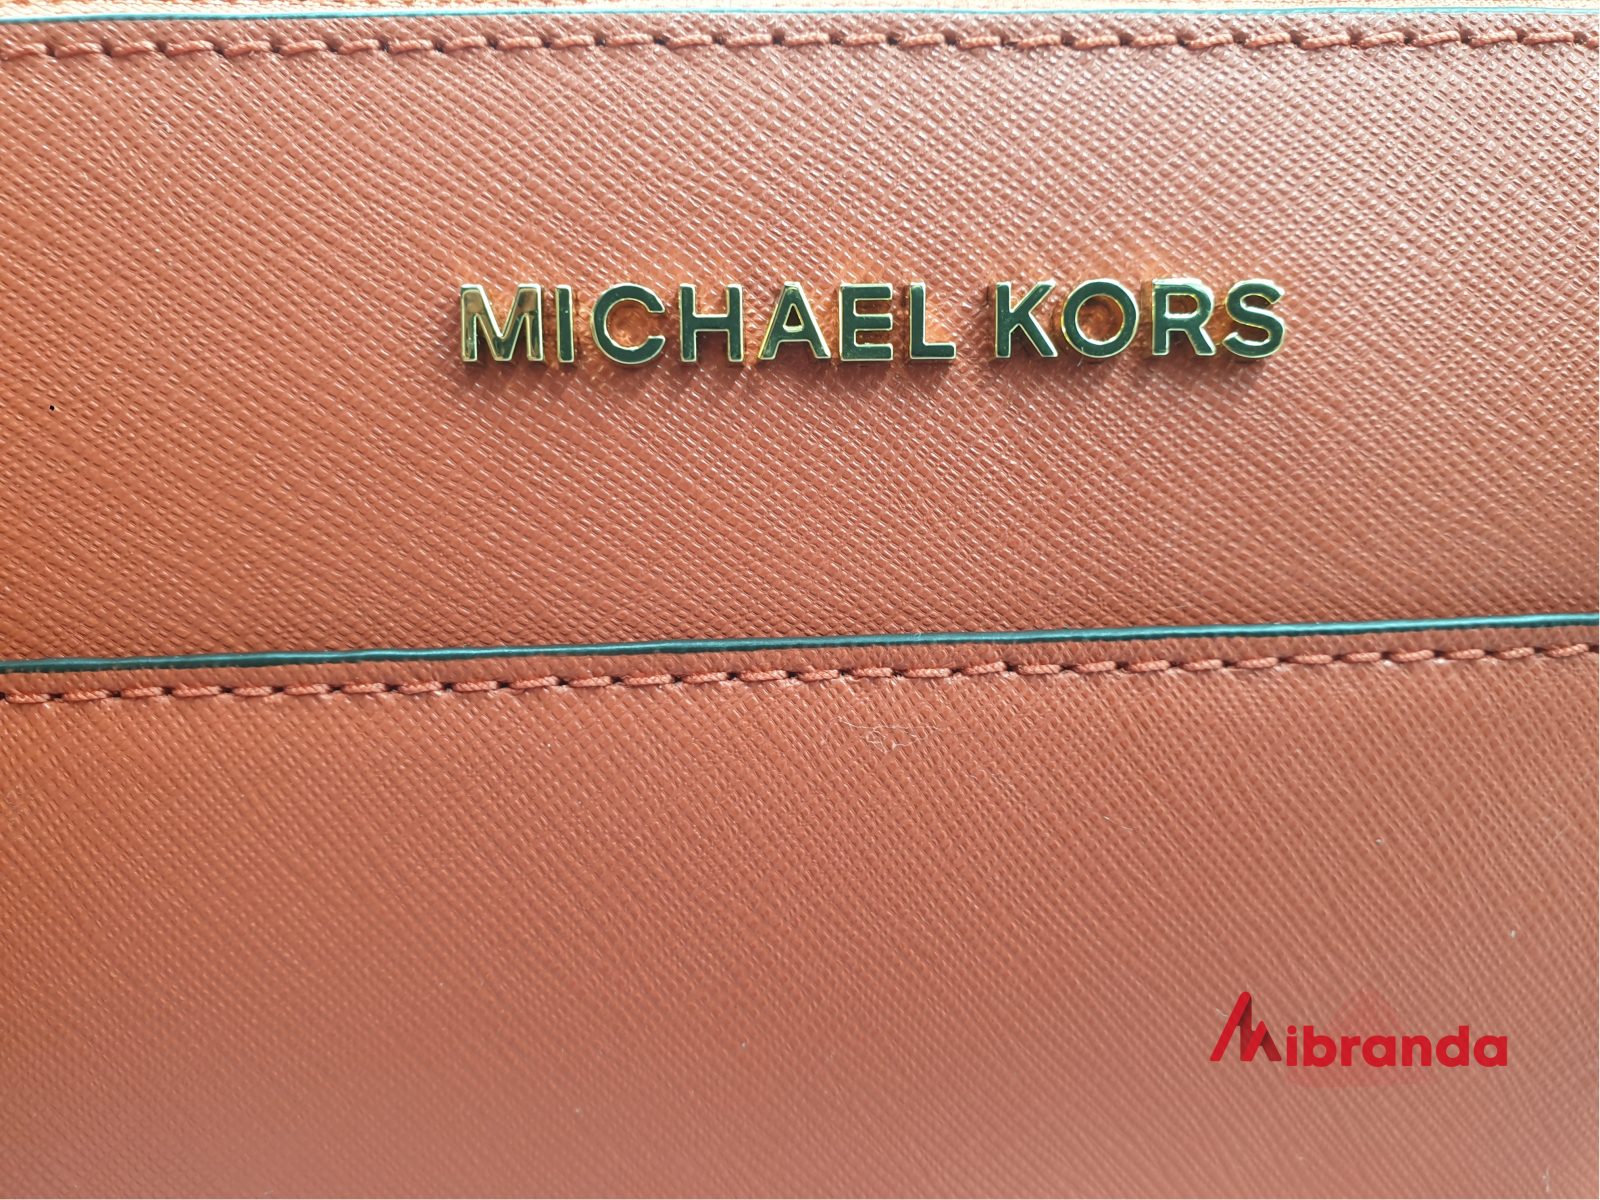 Cómo diferenciar un bolso de Michael Kors verdadero de uno - Mibranda